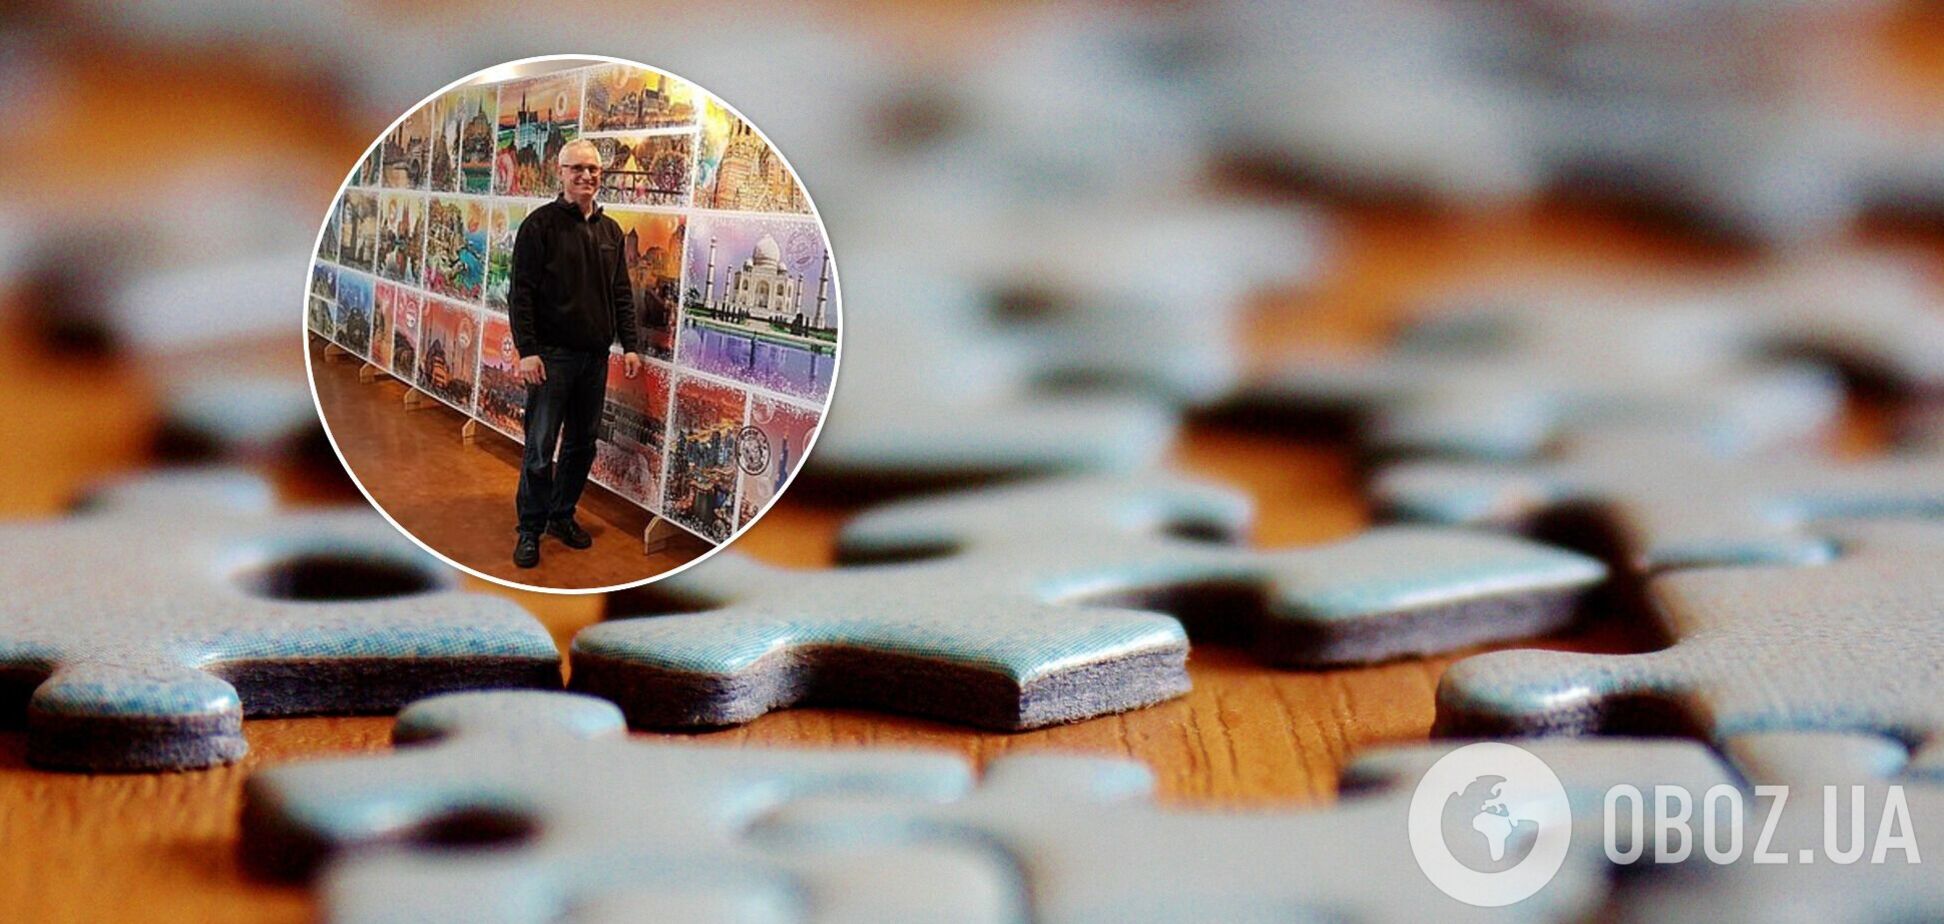 52-летний Петер Шуберт – известный в Германии любитель головоломок